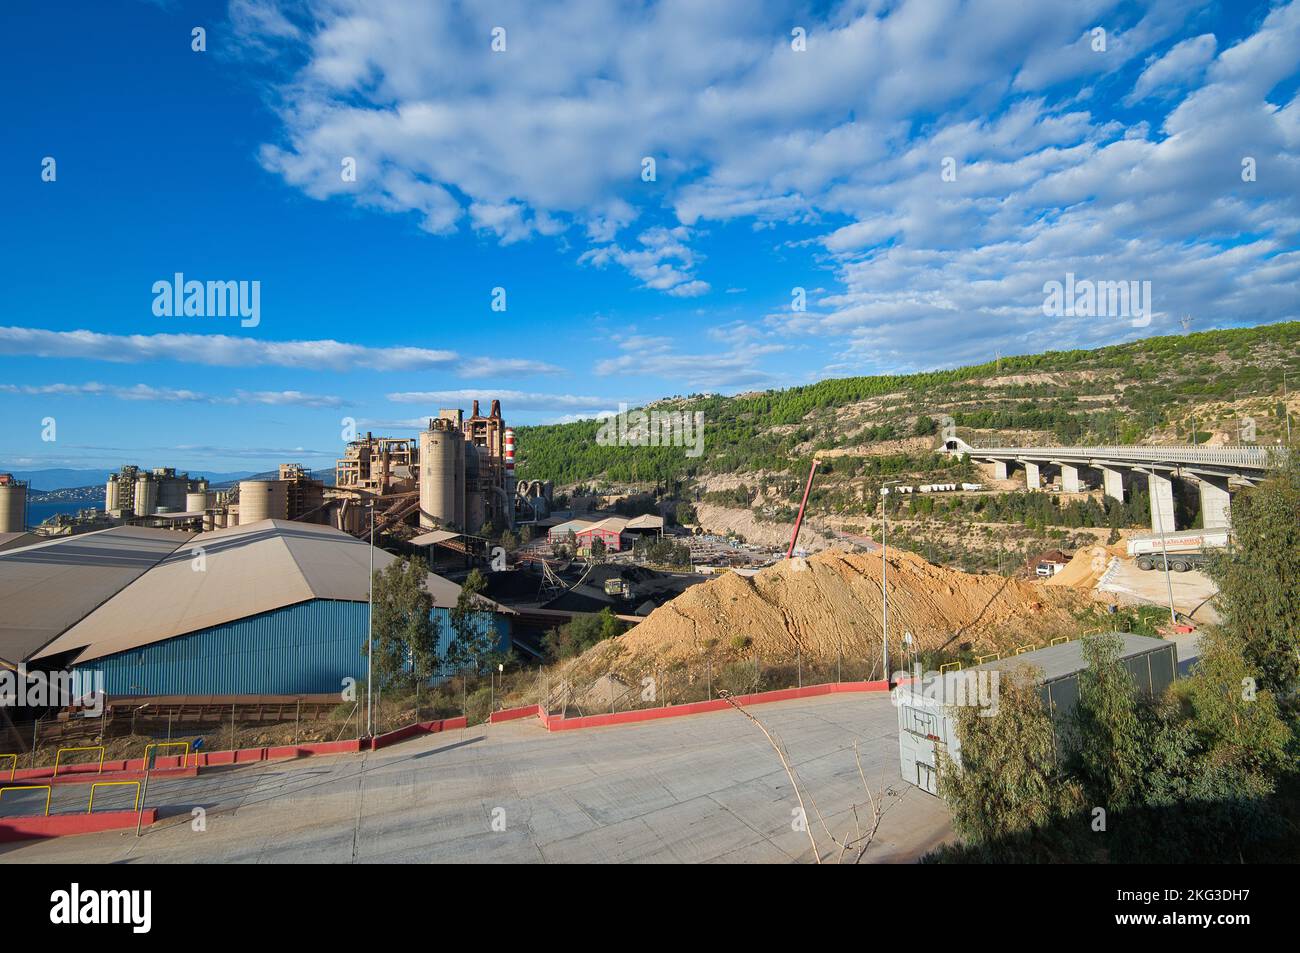 Zone industrielle de l'usine, usine de ciment de Lafarge Volos , ciment de l'industrie lourde, usine de fabrication. Banque D'Images